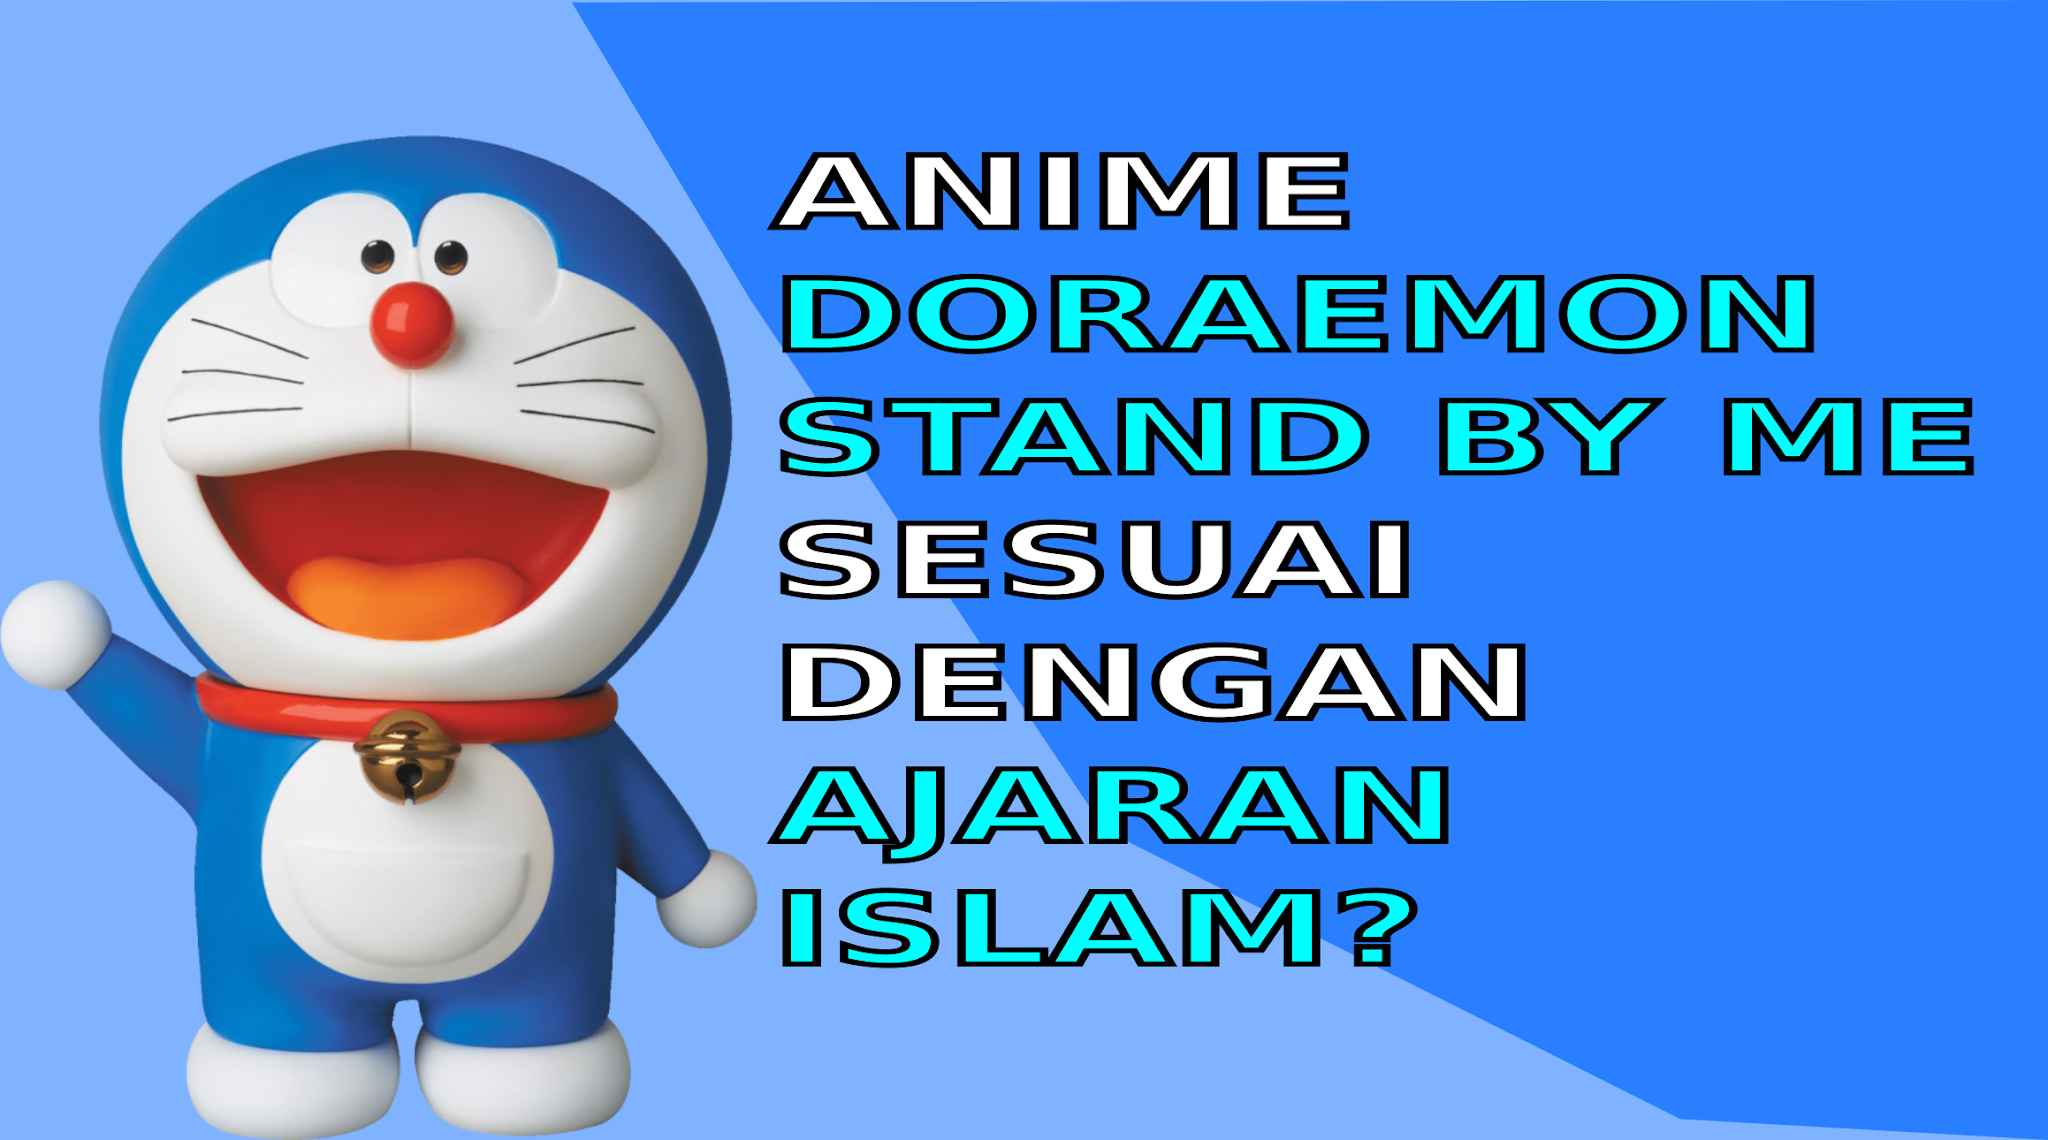 Doraemon Stand By Me sesuai dengan ajaran Islam?